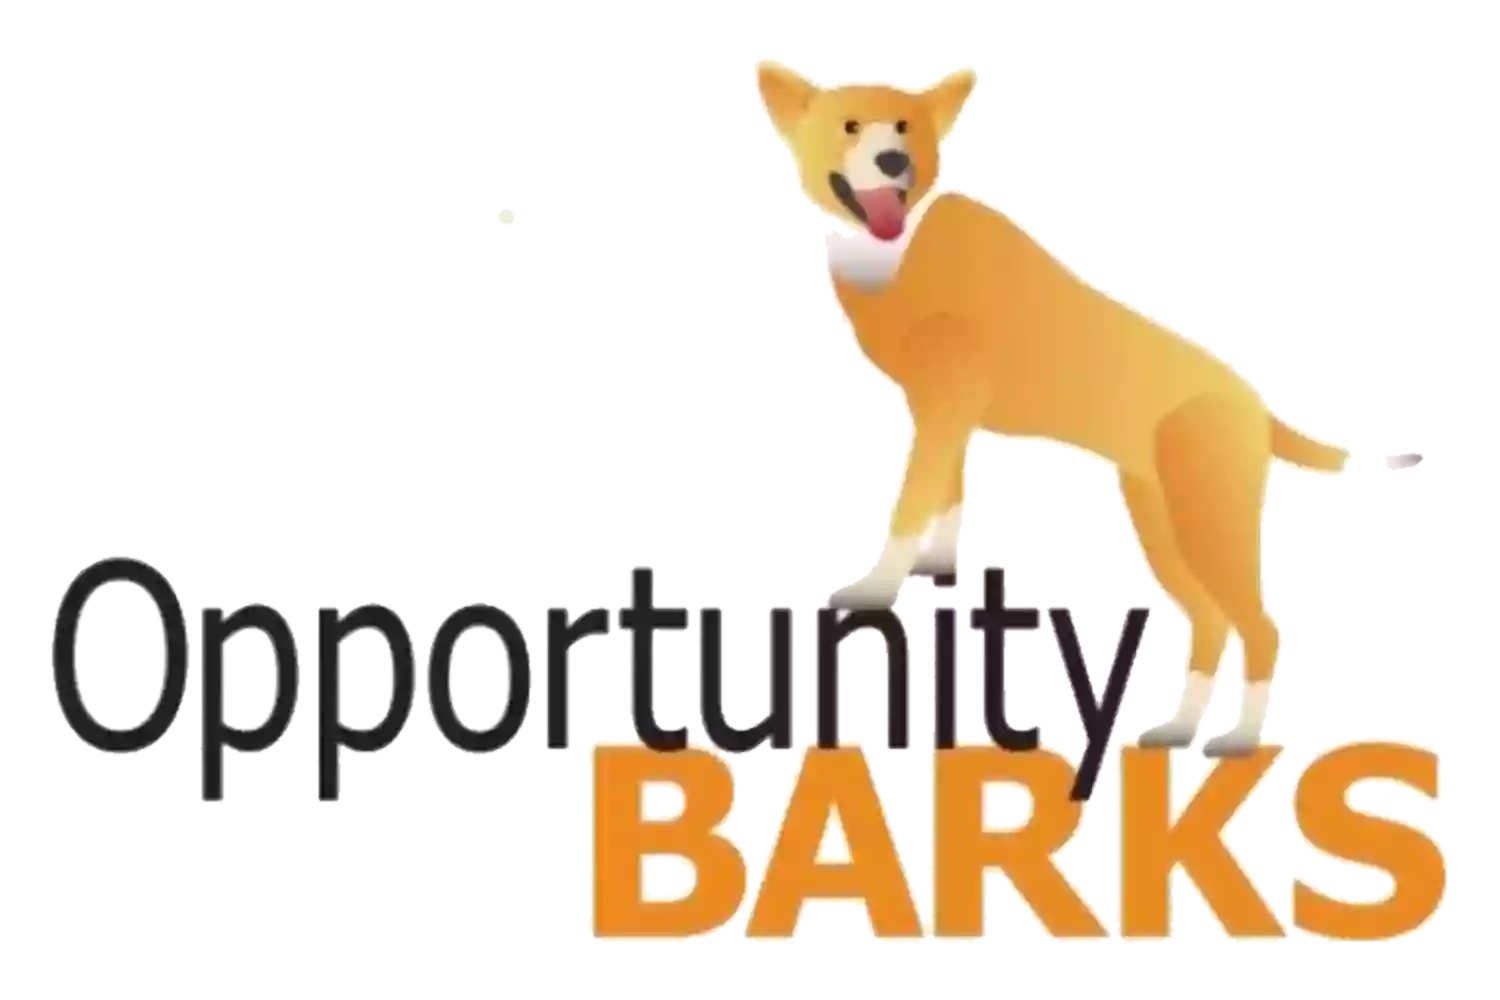 Opportunity Barks